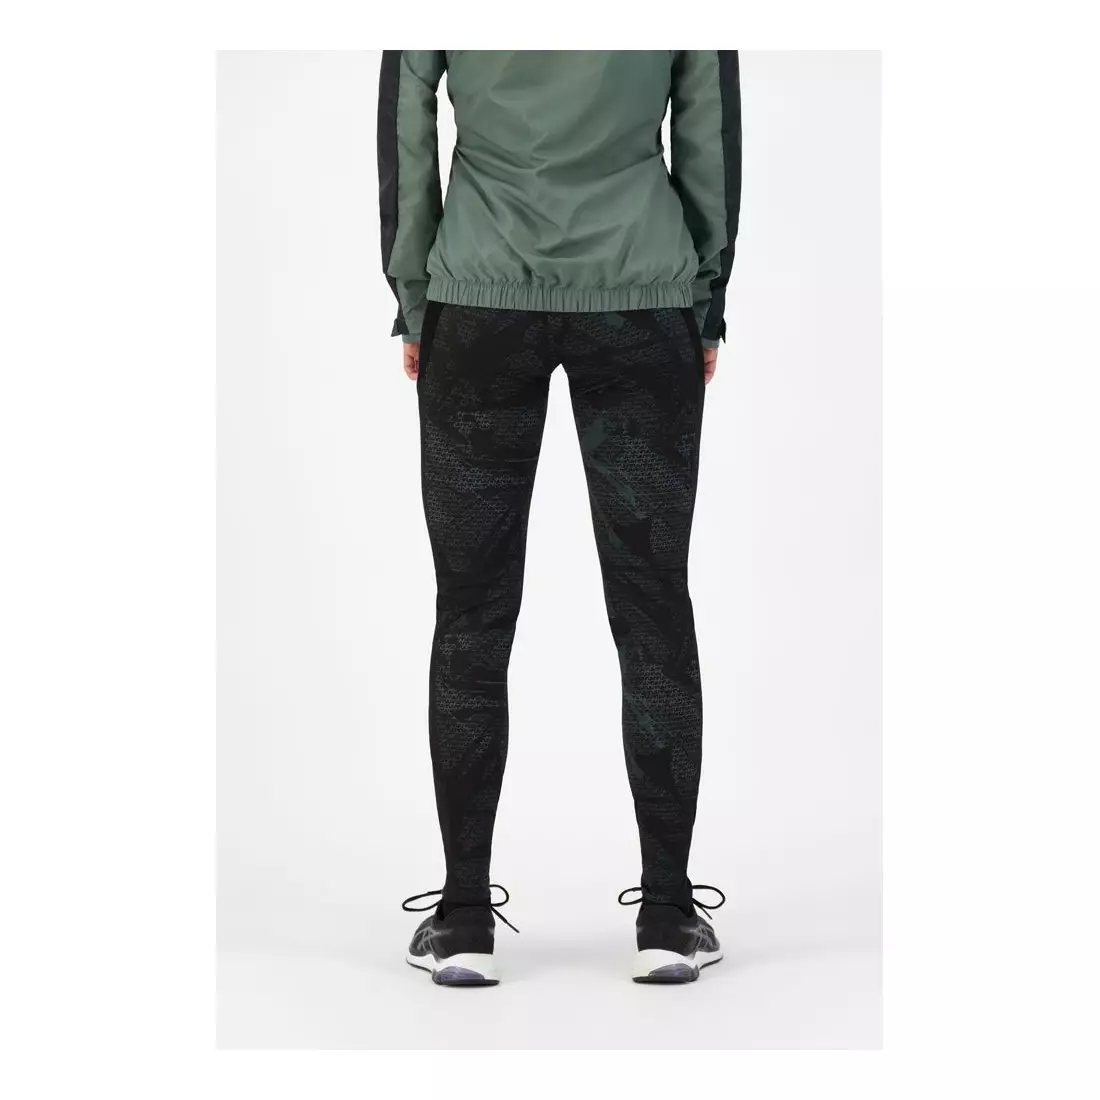 ROGELLI women's running pants SNAKE black/green ROG351107